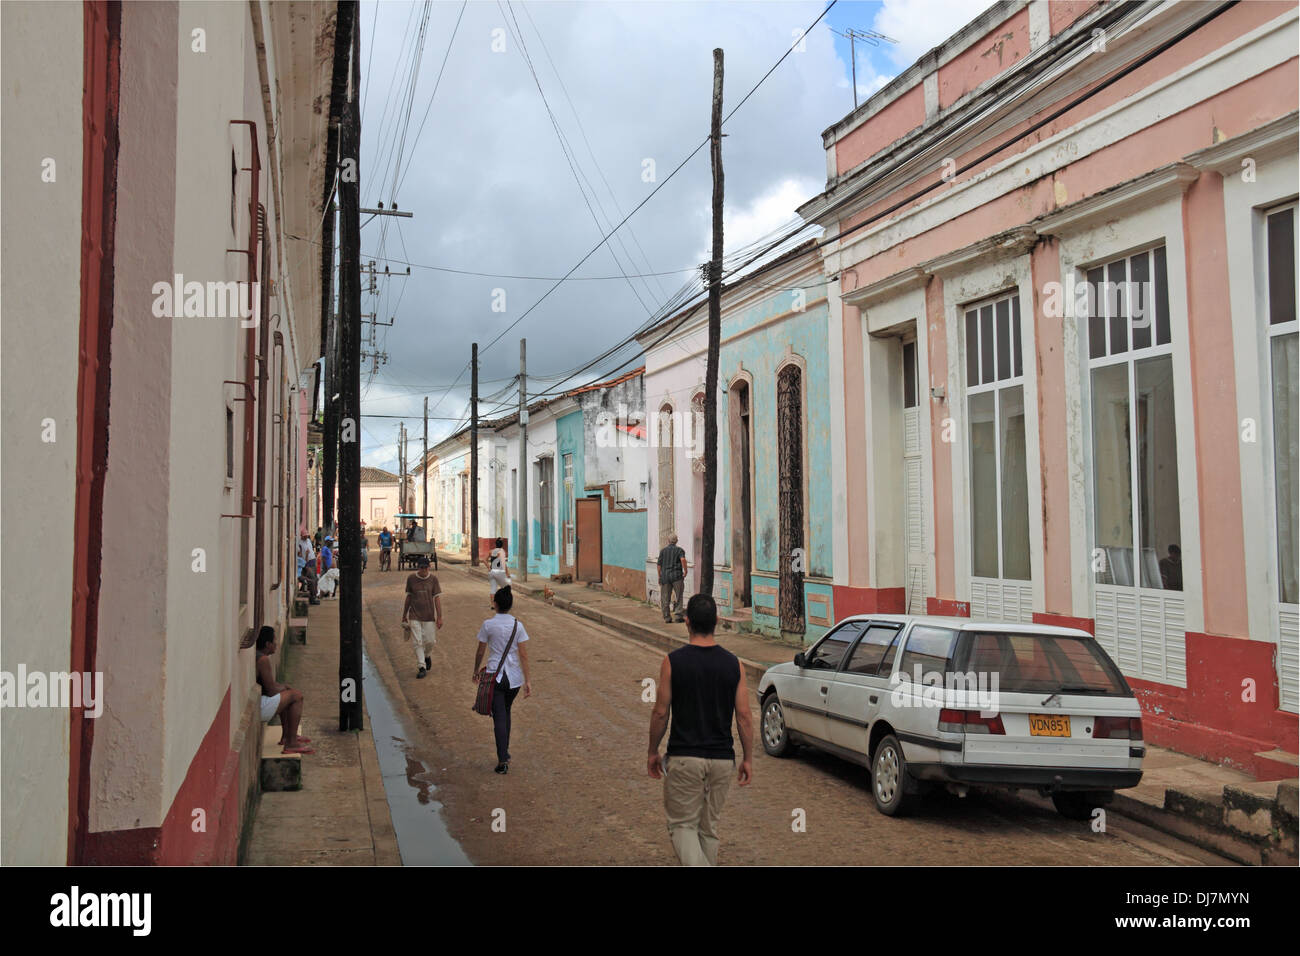 Calle Alejandro del Rio, Remedios, Villa Clara province, Cuba, Caribbean Sea, Central America Stock Photo